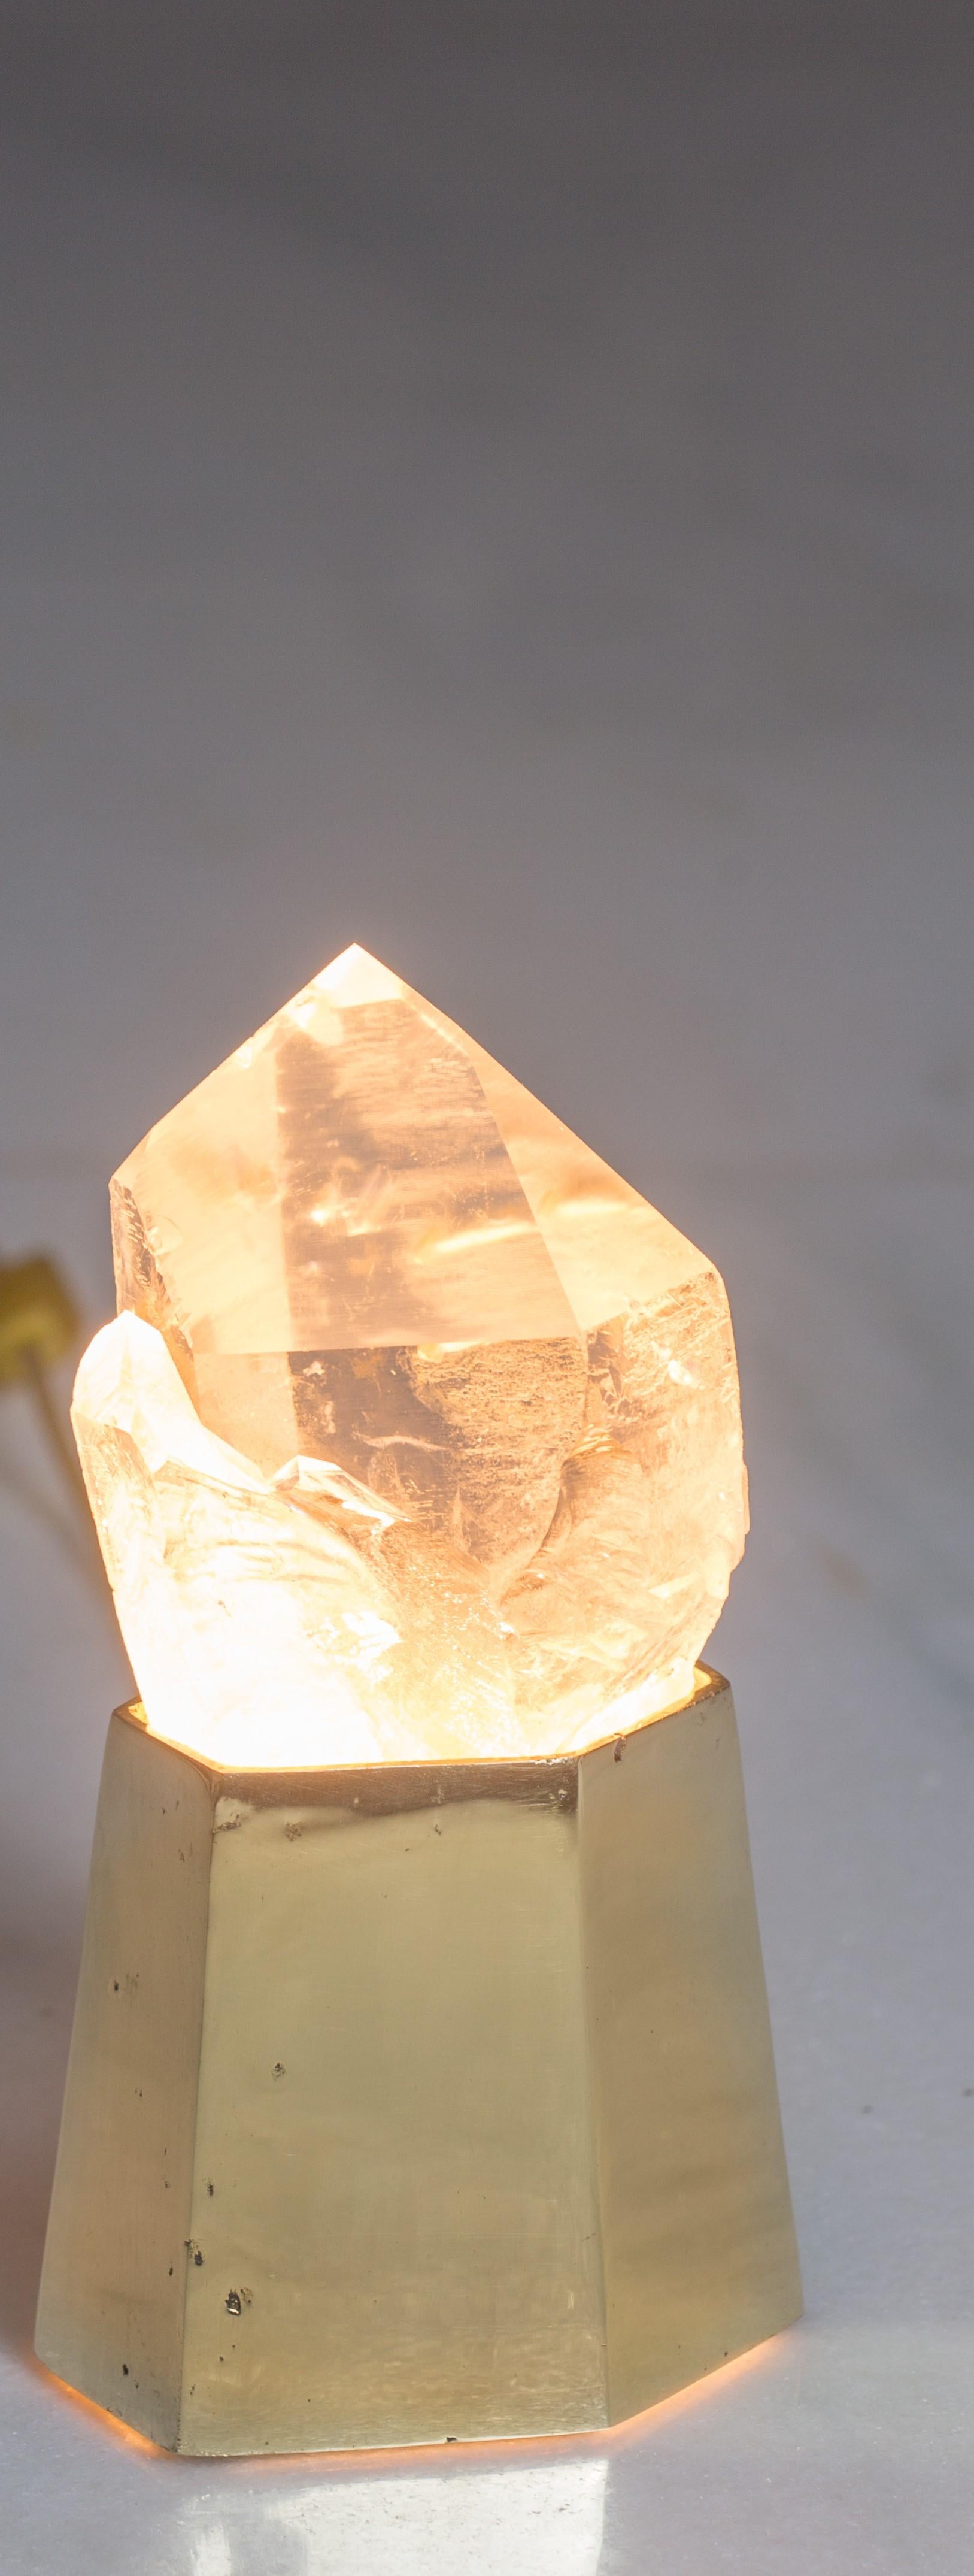 unique crystal lamps